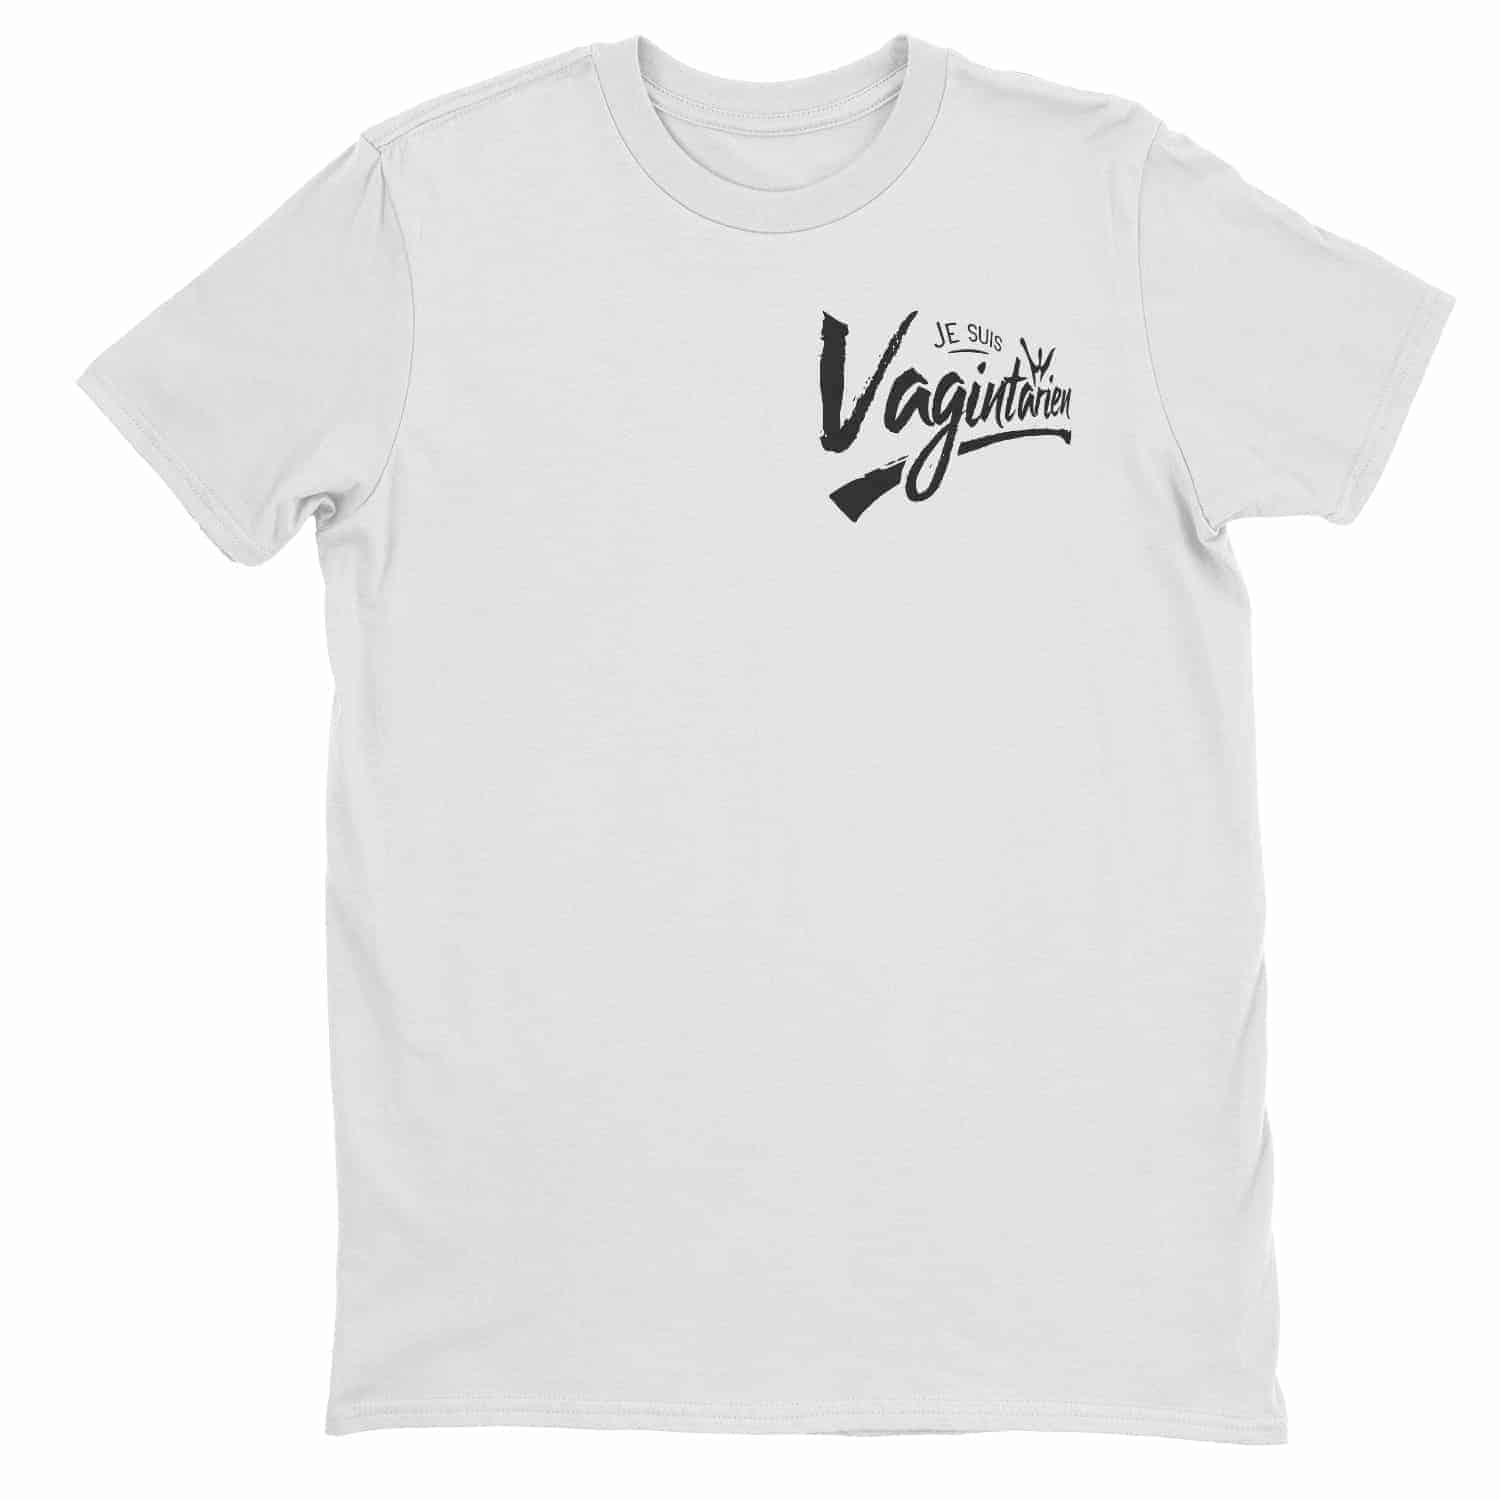 Je suis Vagintarien t-shirt pour homme | t-shirt drôle | t-shirt humoristique 2